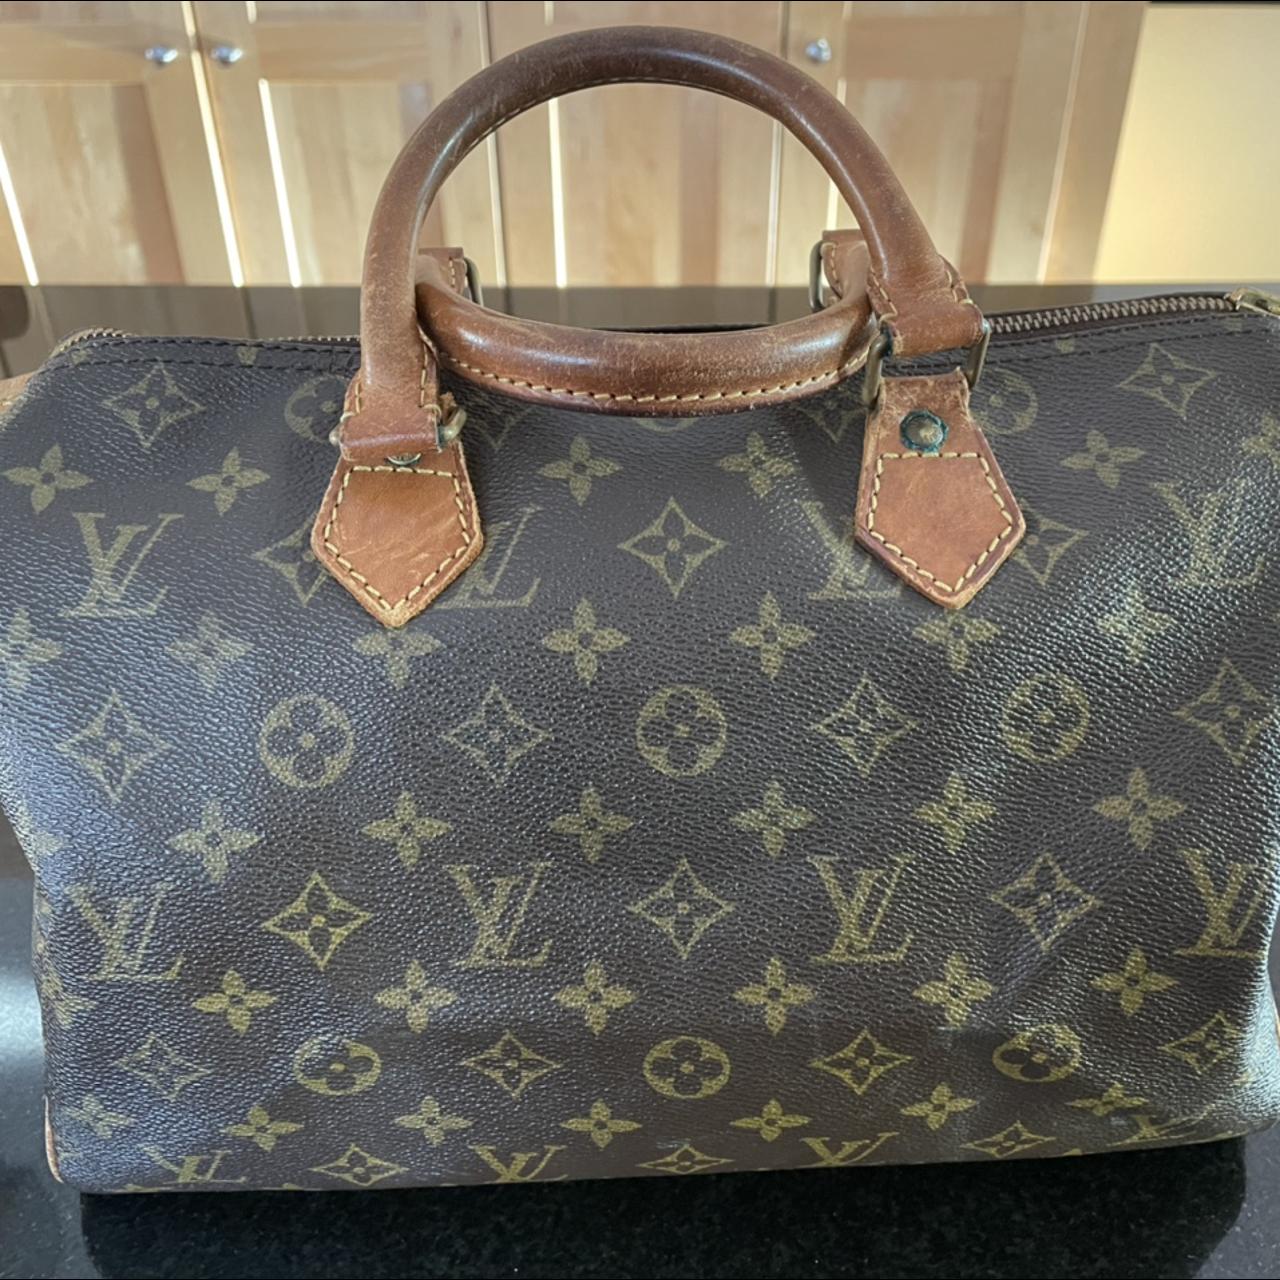 Authentic Louis Vuitton bag purse Speedy 30 Amazing - Depop